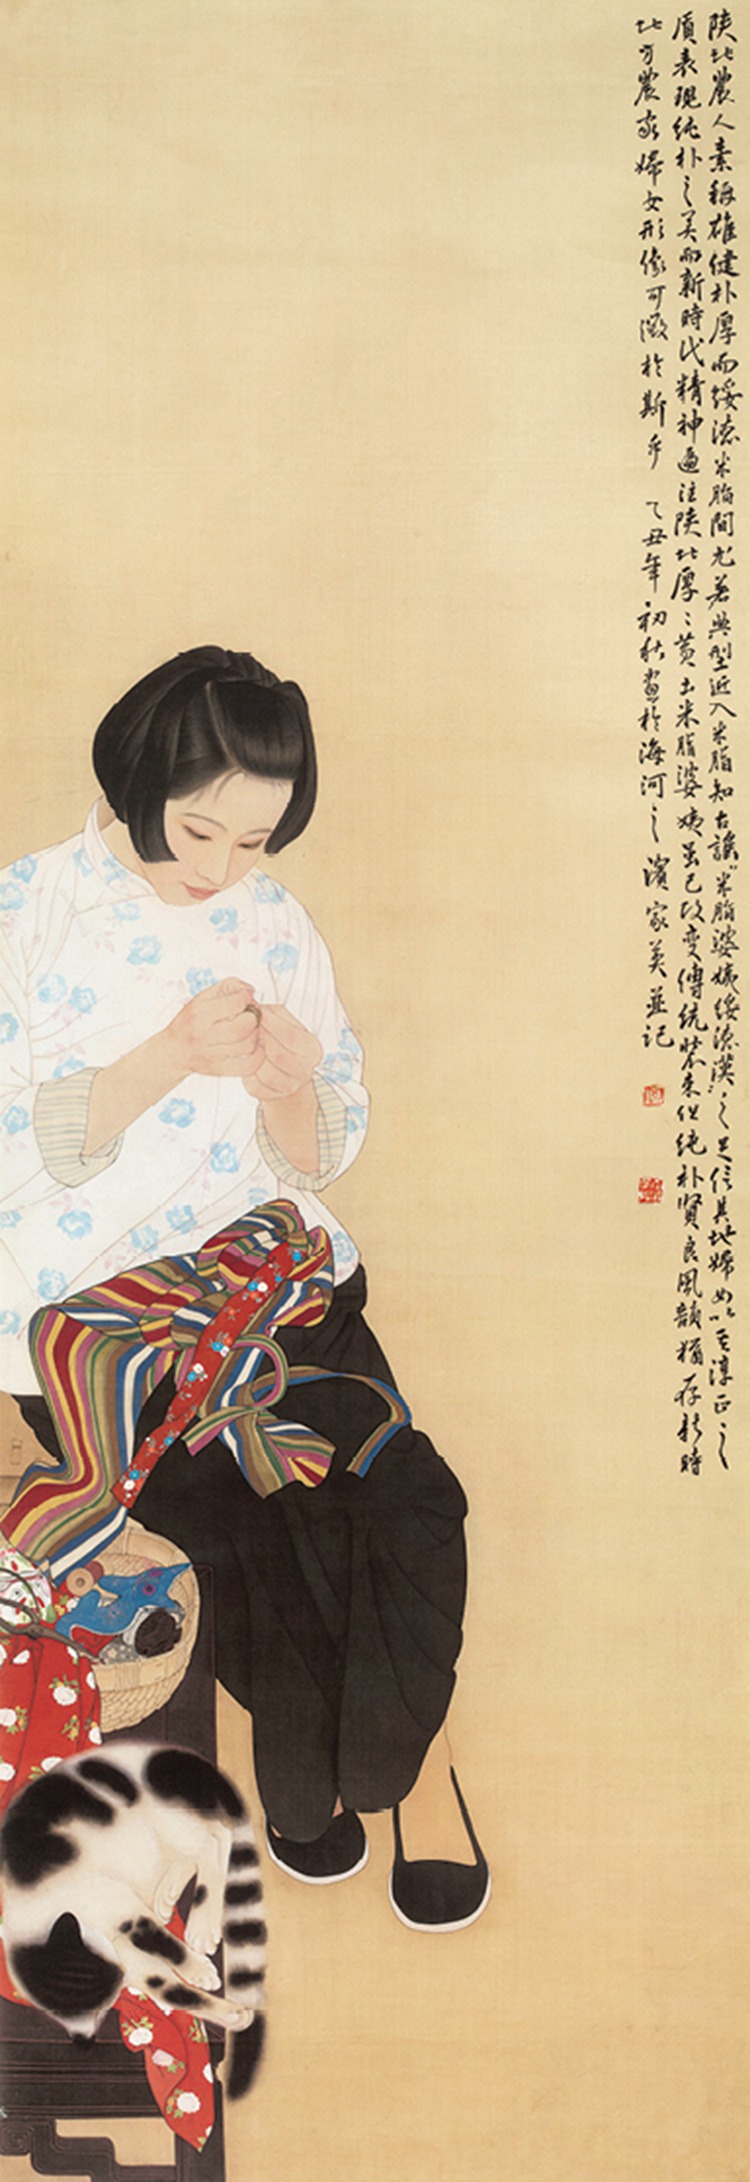 何家英 / 特邀　　  作品名称：《米脂的婆姨》（中国画）　  作品尺寸：234cm×77cm